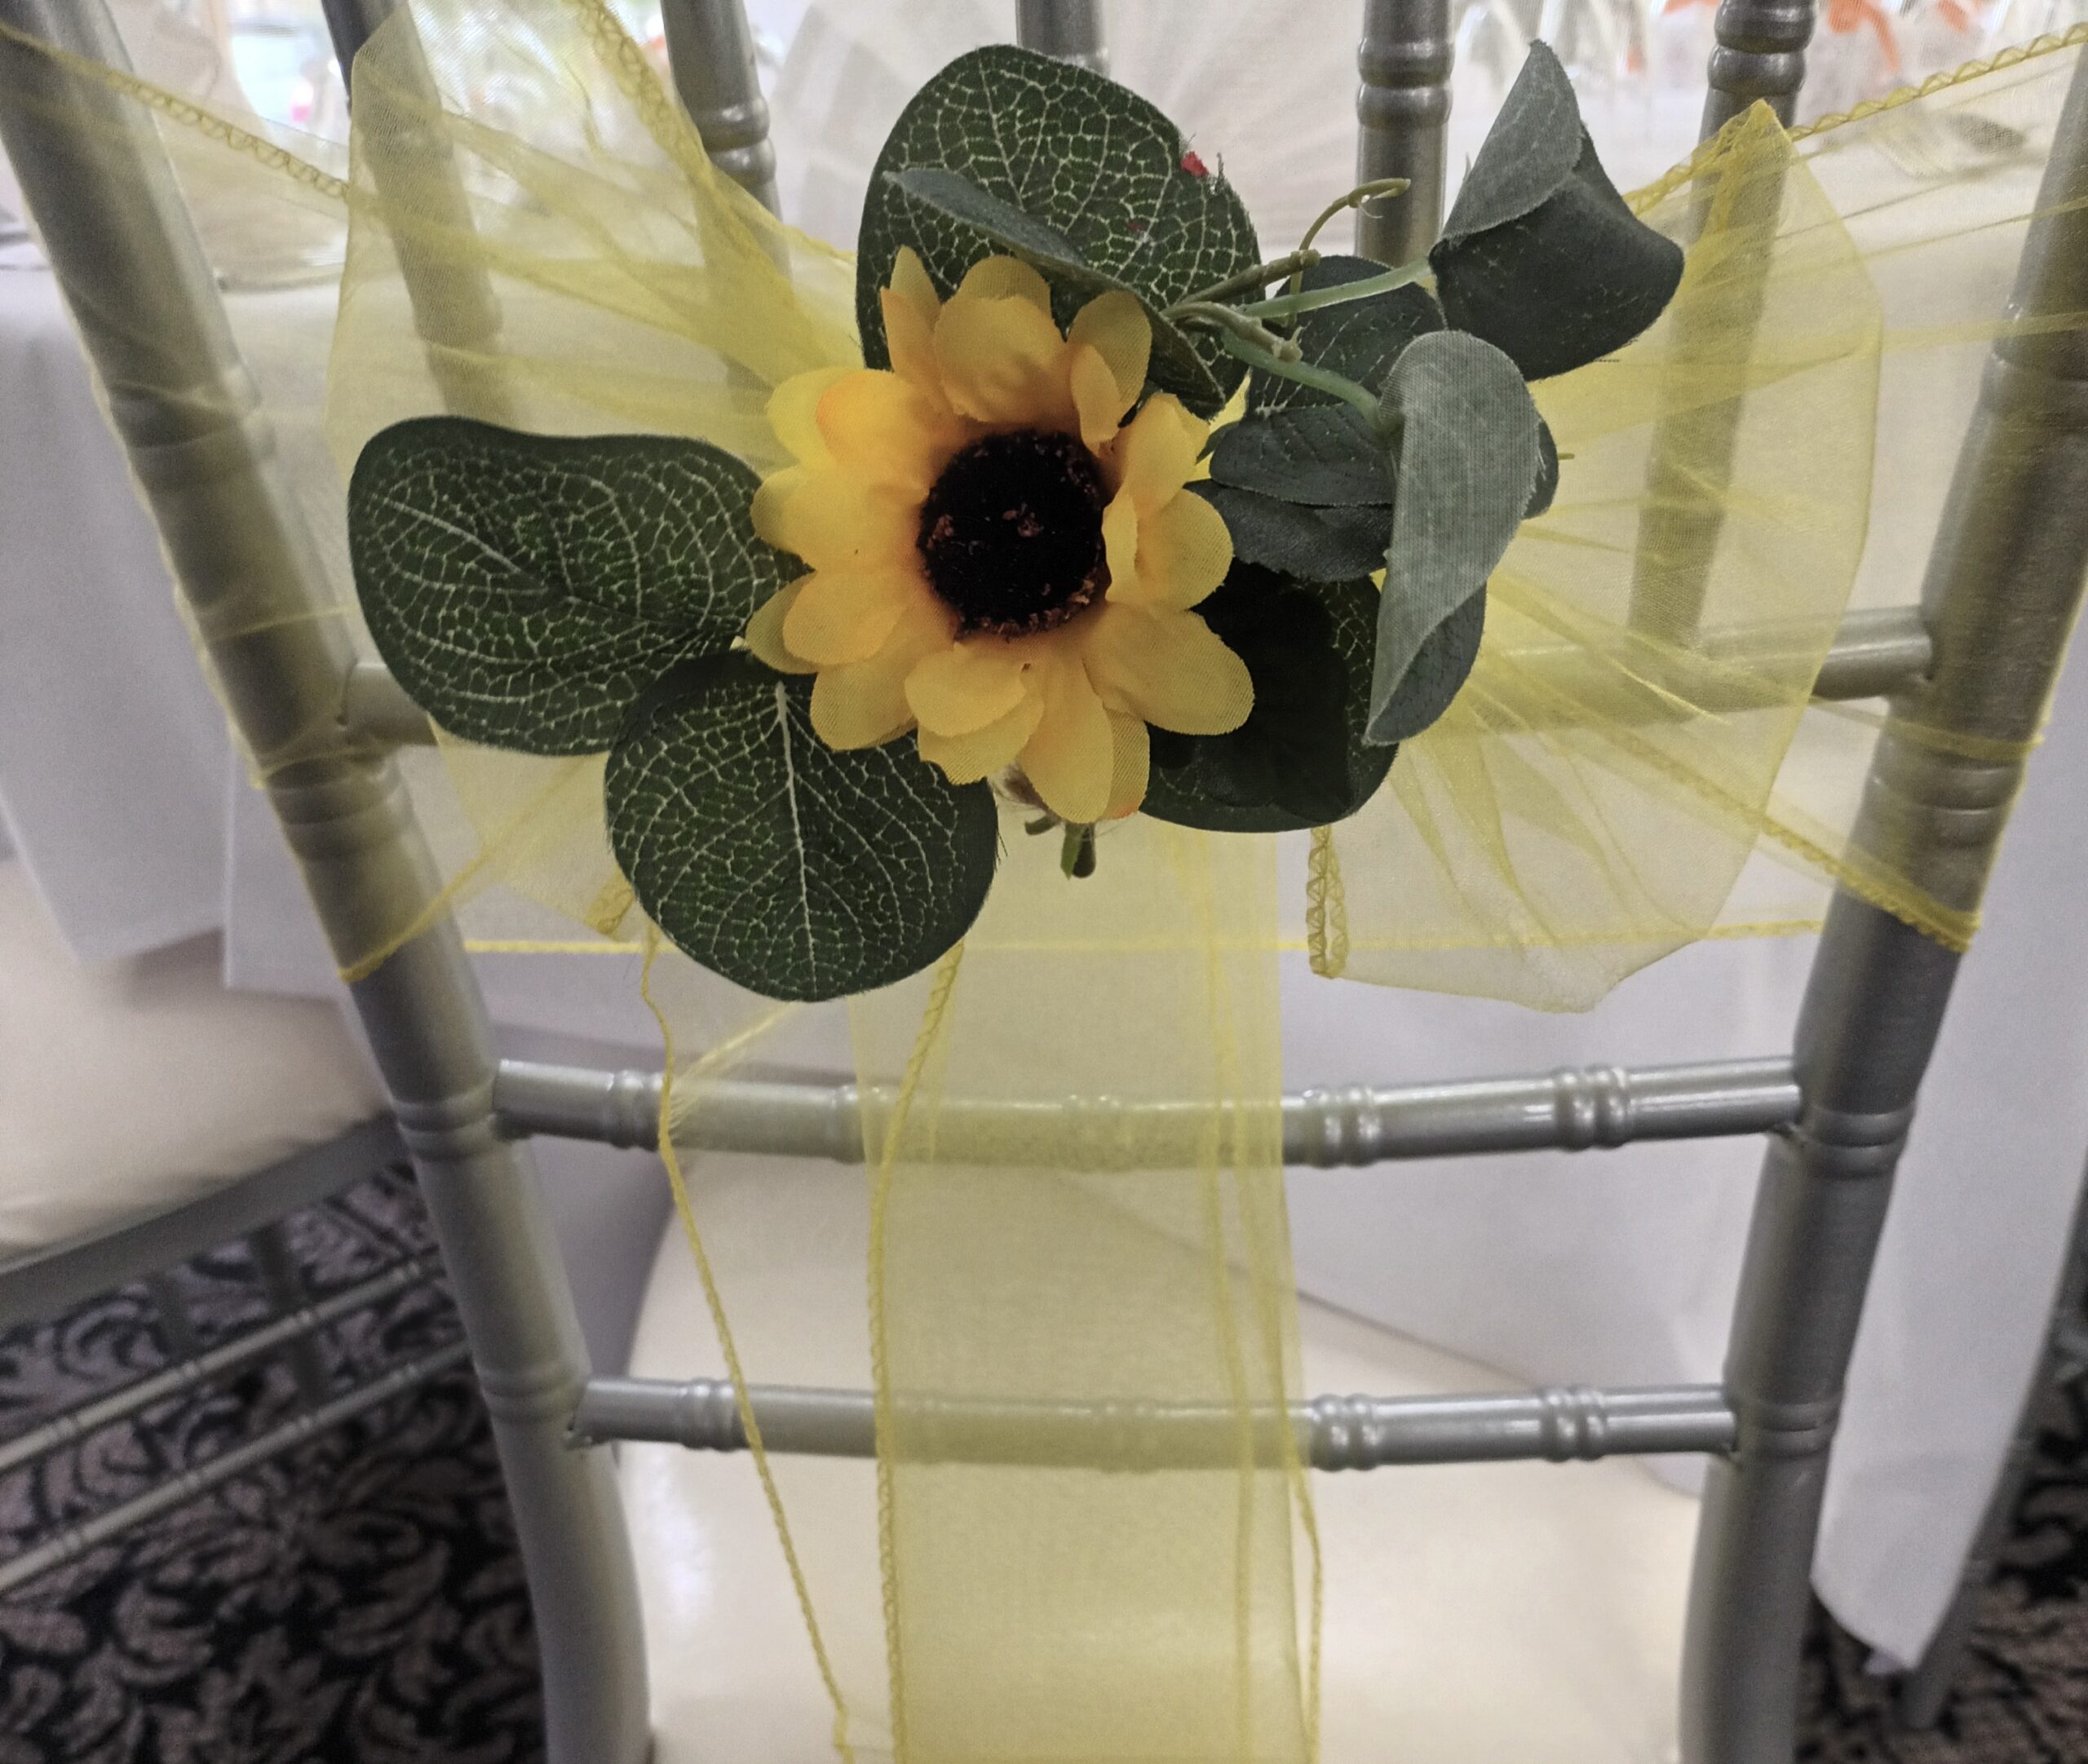 Large sunflower embellishment on yellow sash